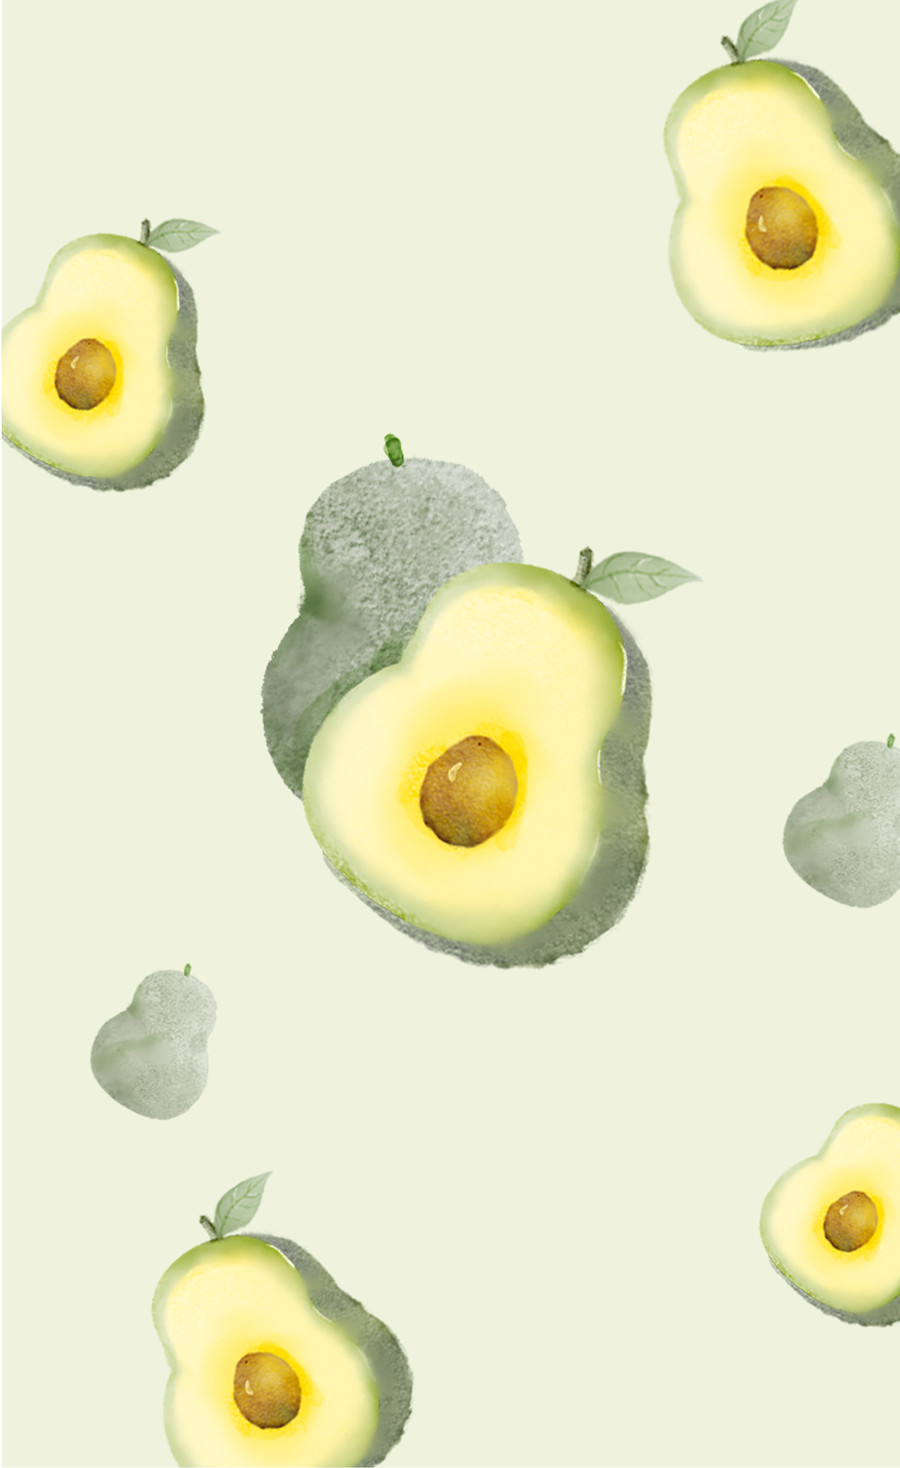 水果葡萄手机壳图案设计插画